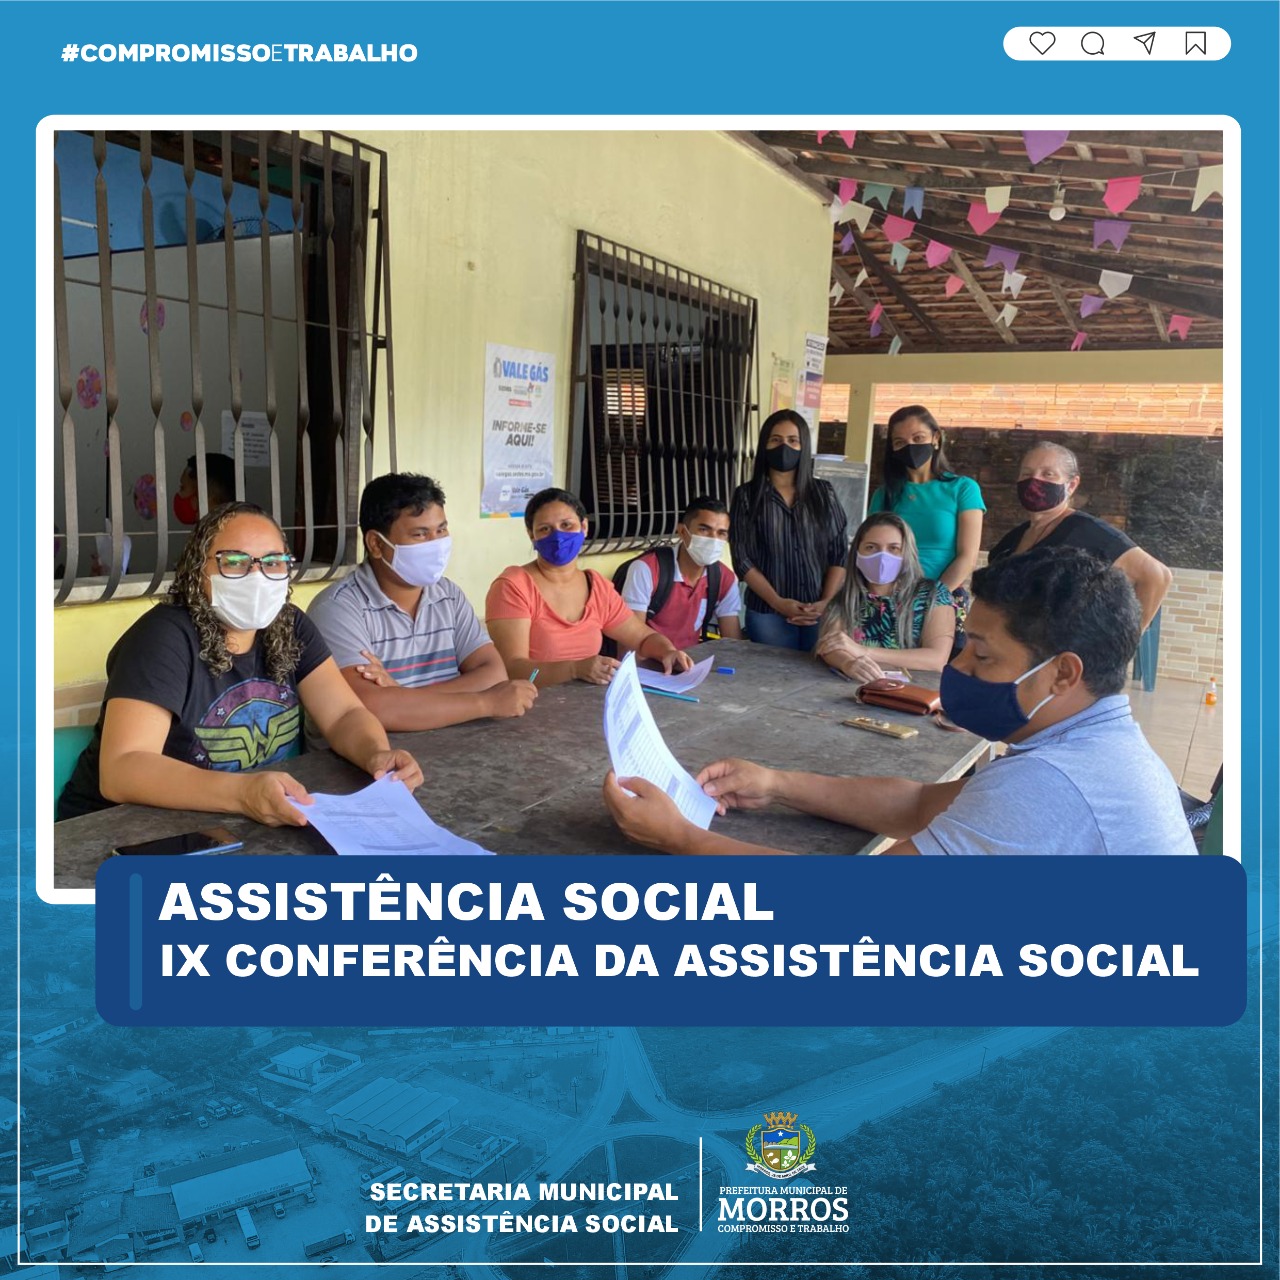 O Conselho Municipal de Assistência Social- CMAS convocou a IX Conferência de Assistência Social do município de Morros